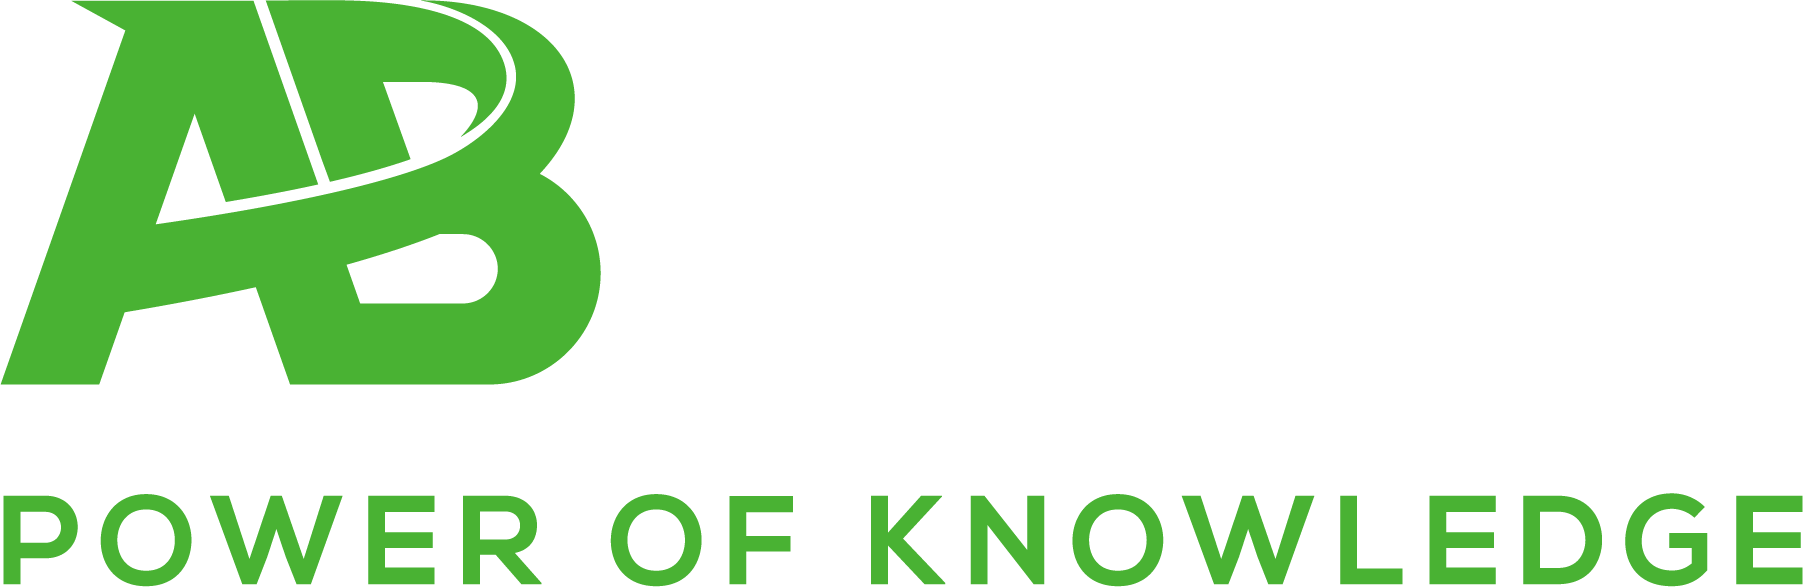 AB Training Experts Logo